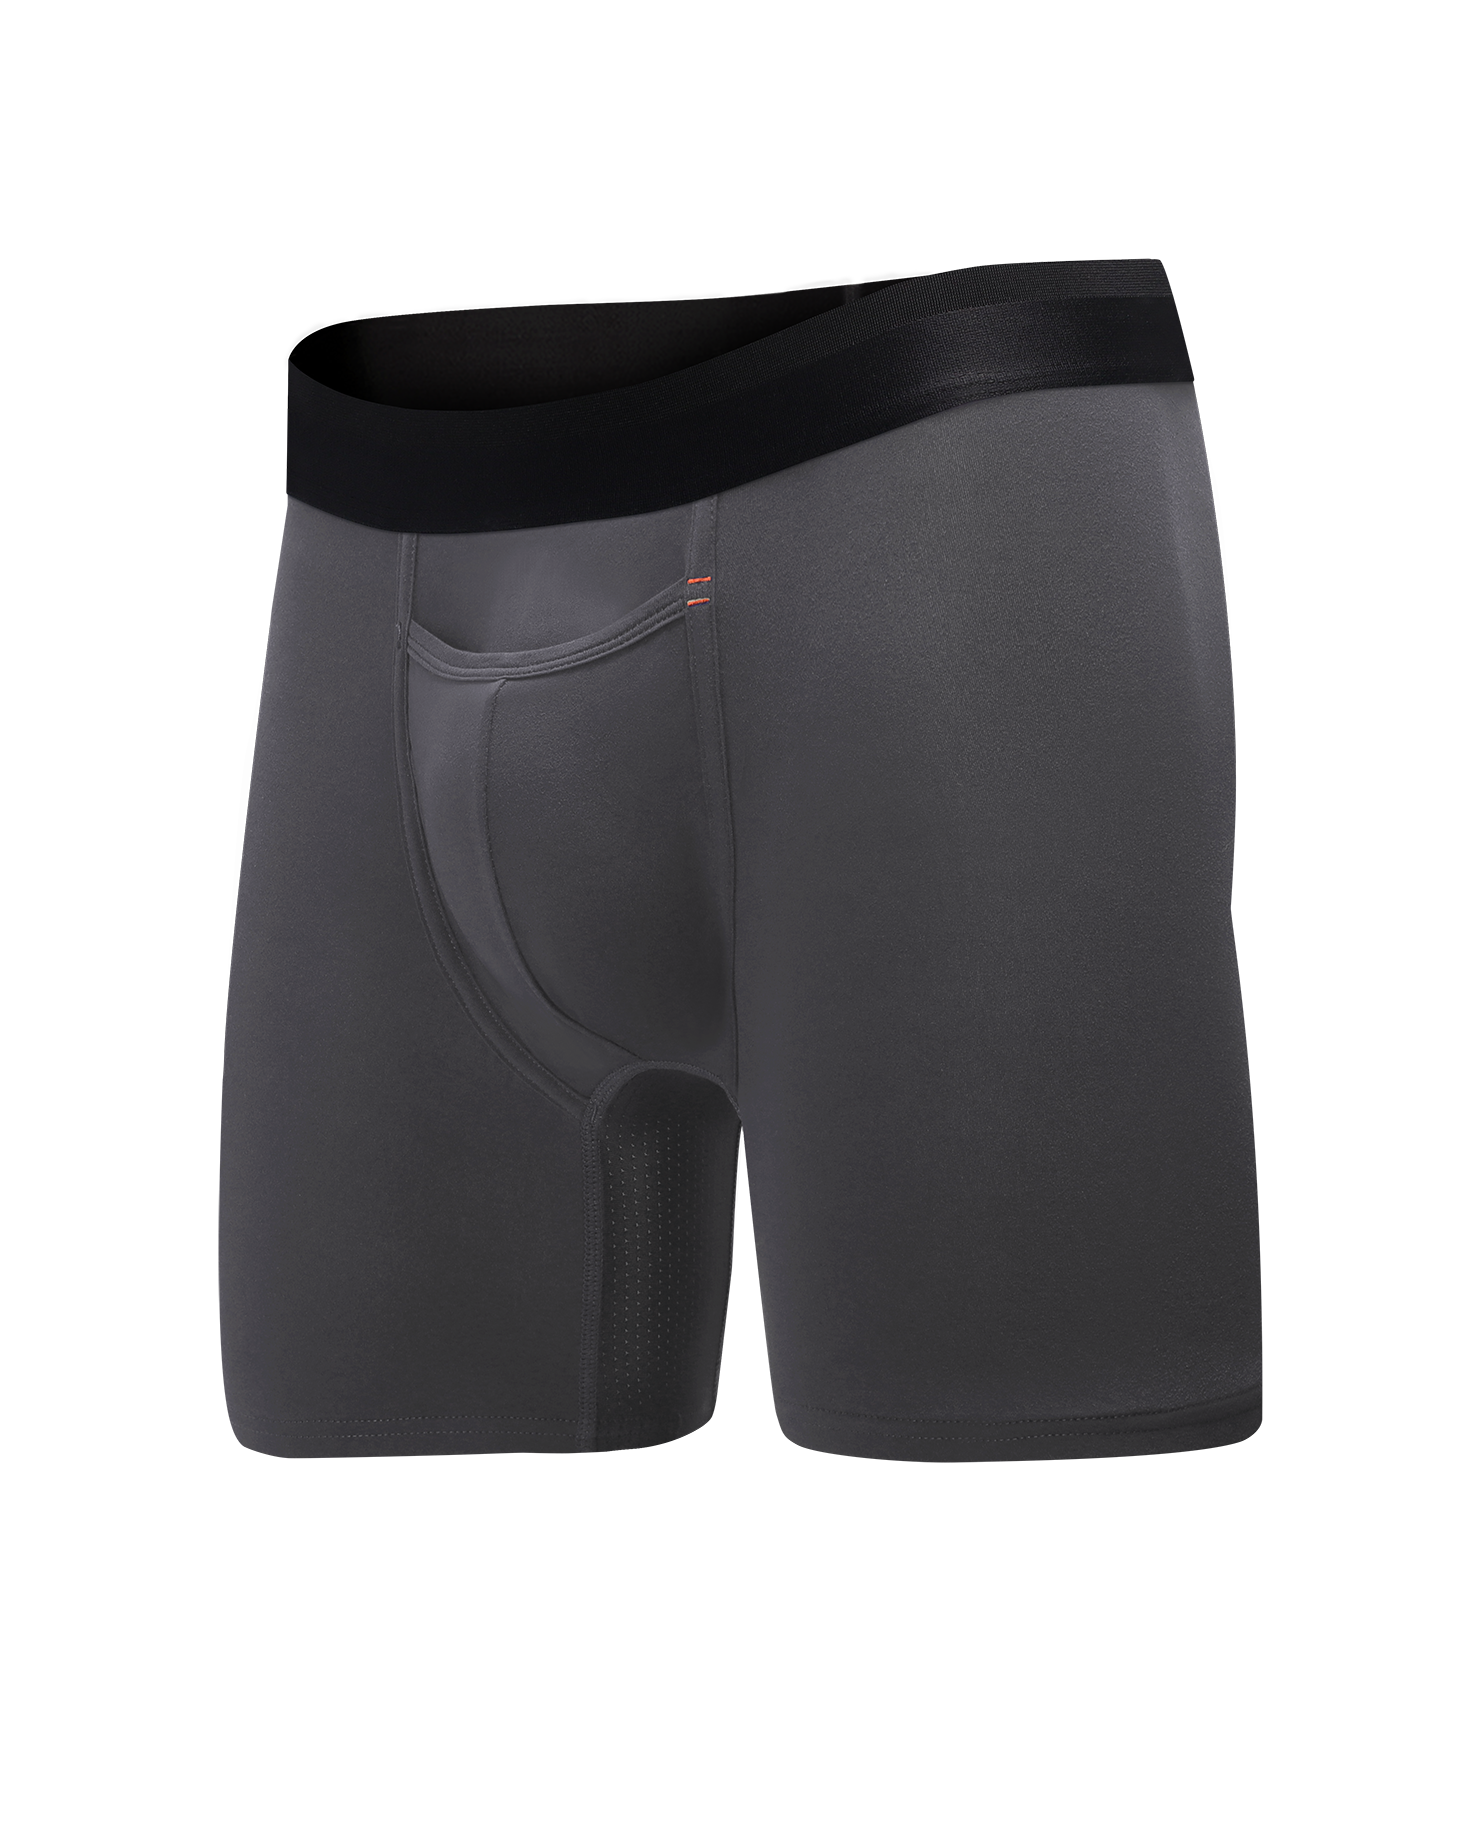 Seamless Underwear Shorts Underwear Workout XL/2XL/3XL/4XL Briefs Bulge